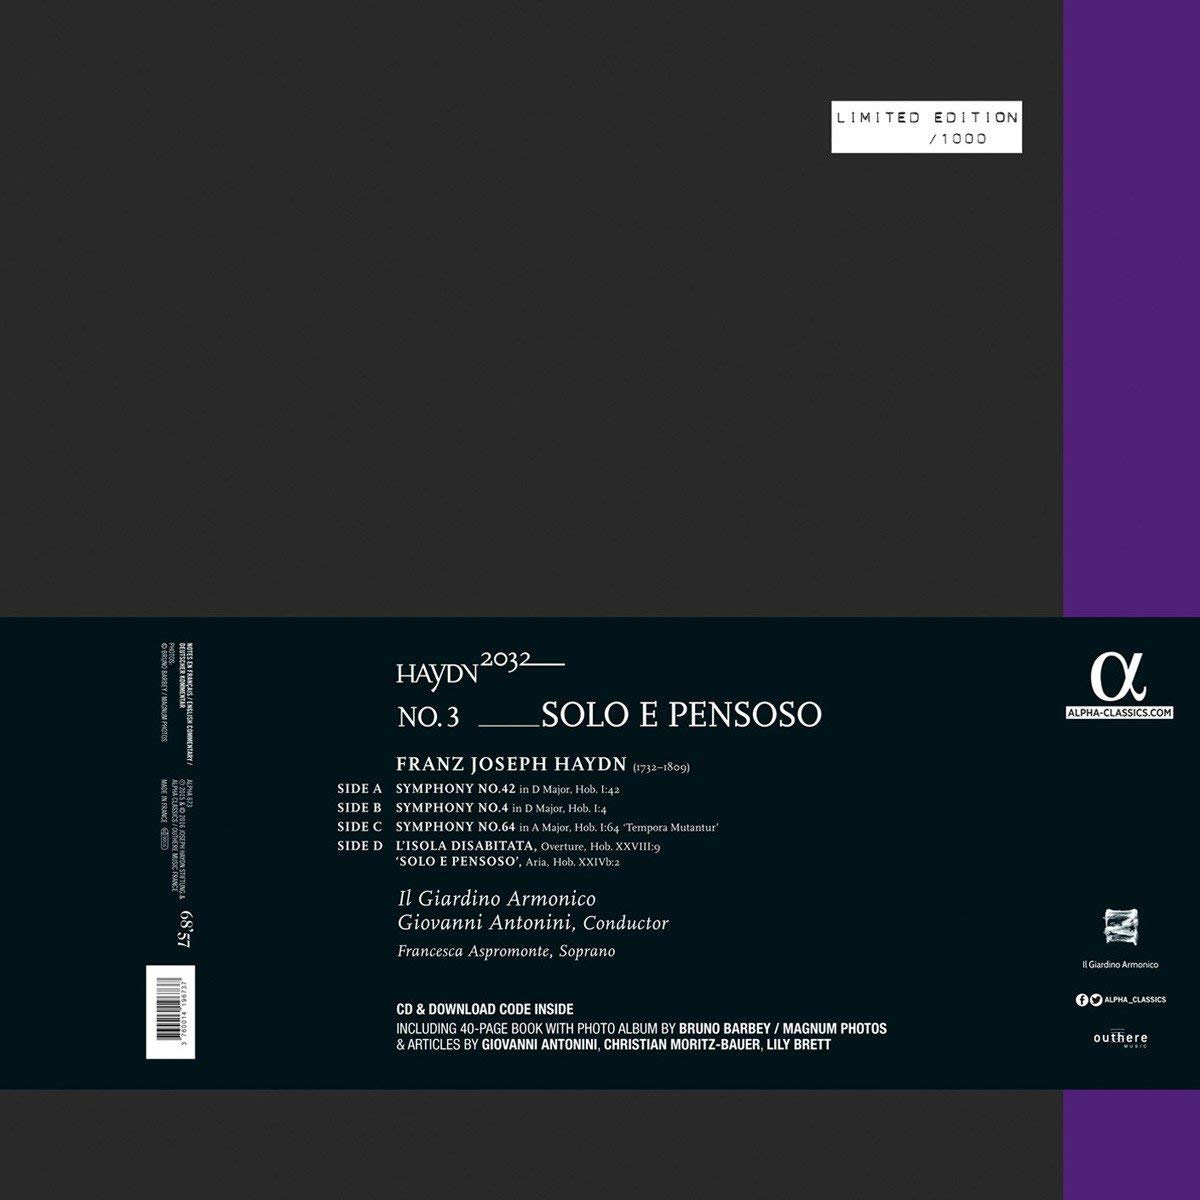 Haydn 2032 vol. 3 - Solo e Pensoso (180g) - slide-1